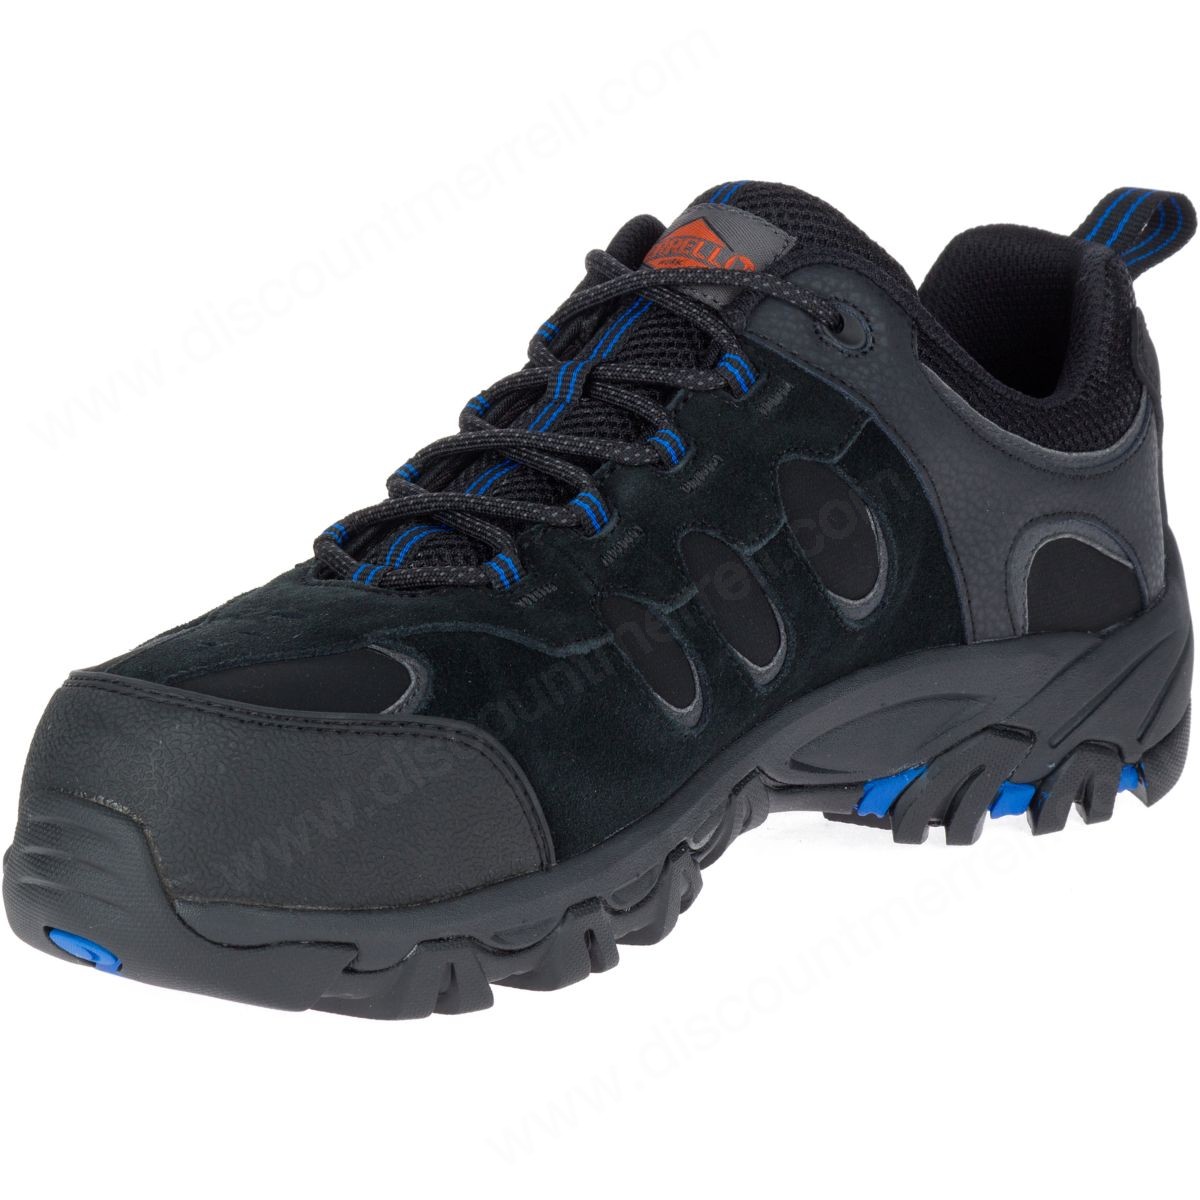 Merrell Man's Ridgepass Bolt Comp Toe Work Sneaker Wide Width Black - -5